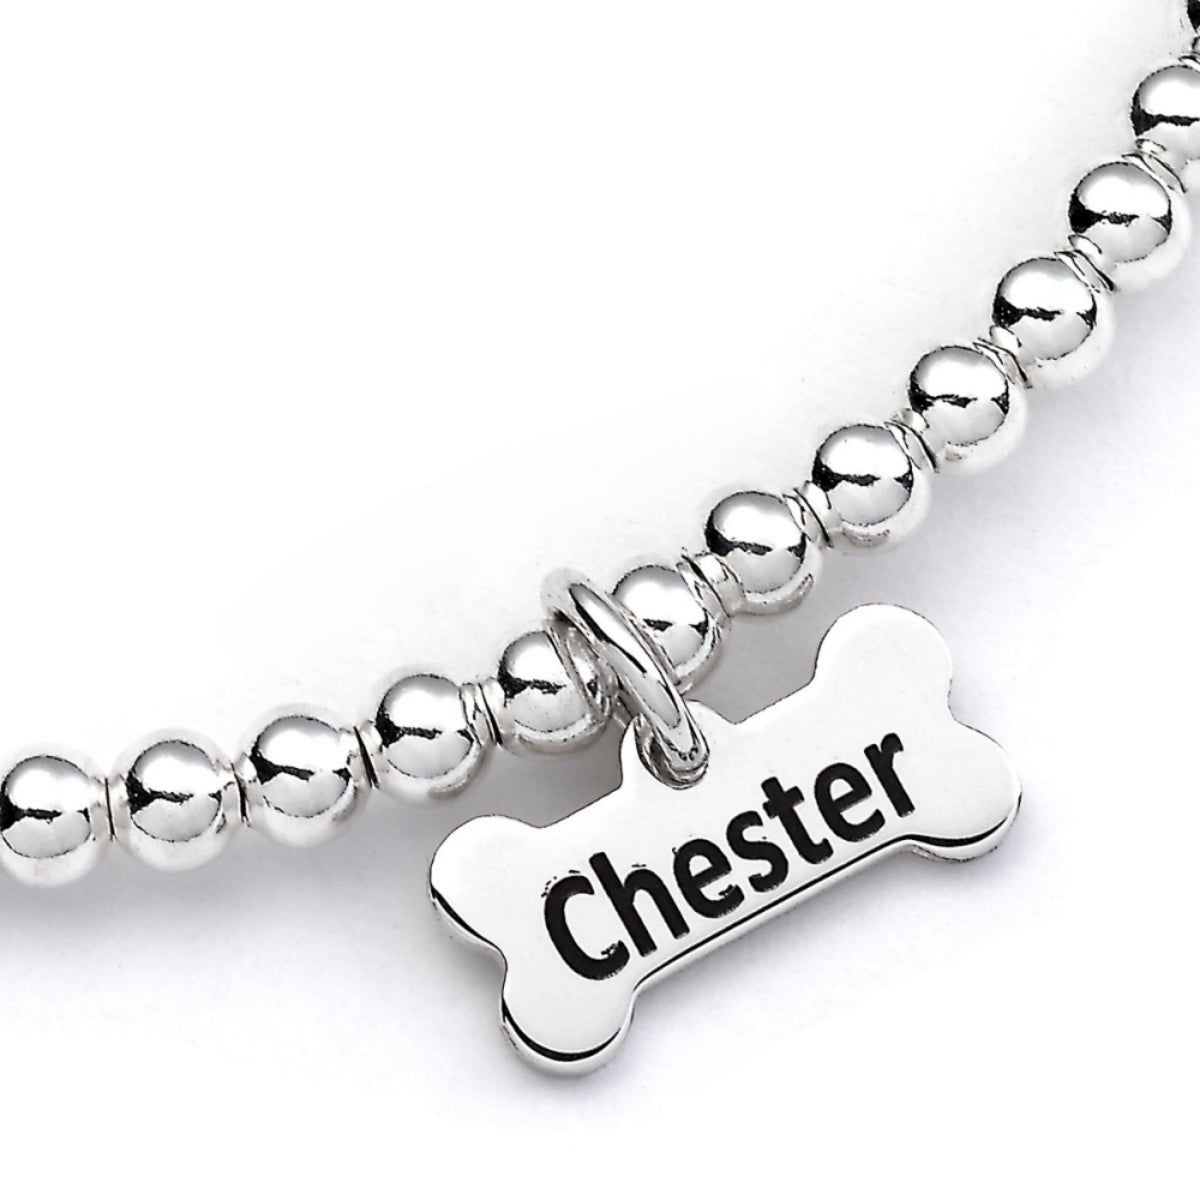 Sealyham Terrier Silhouette Silver Ball Bead Bracelet - Personalised - MYLEE London